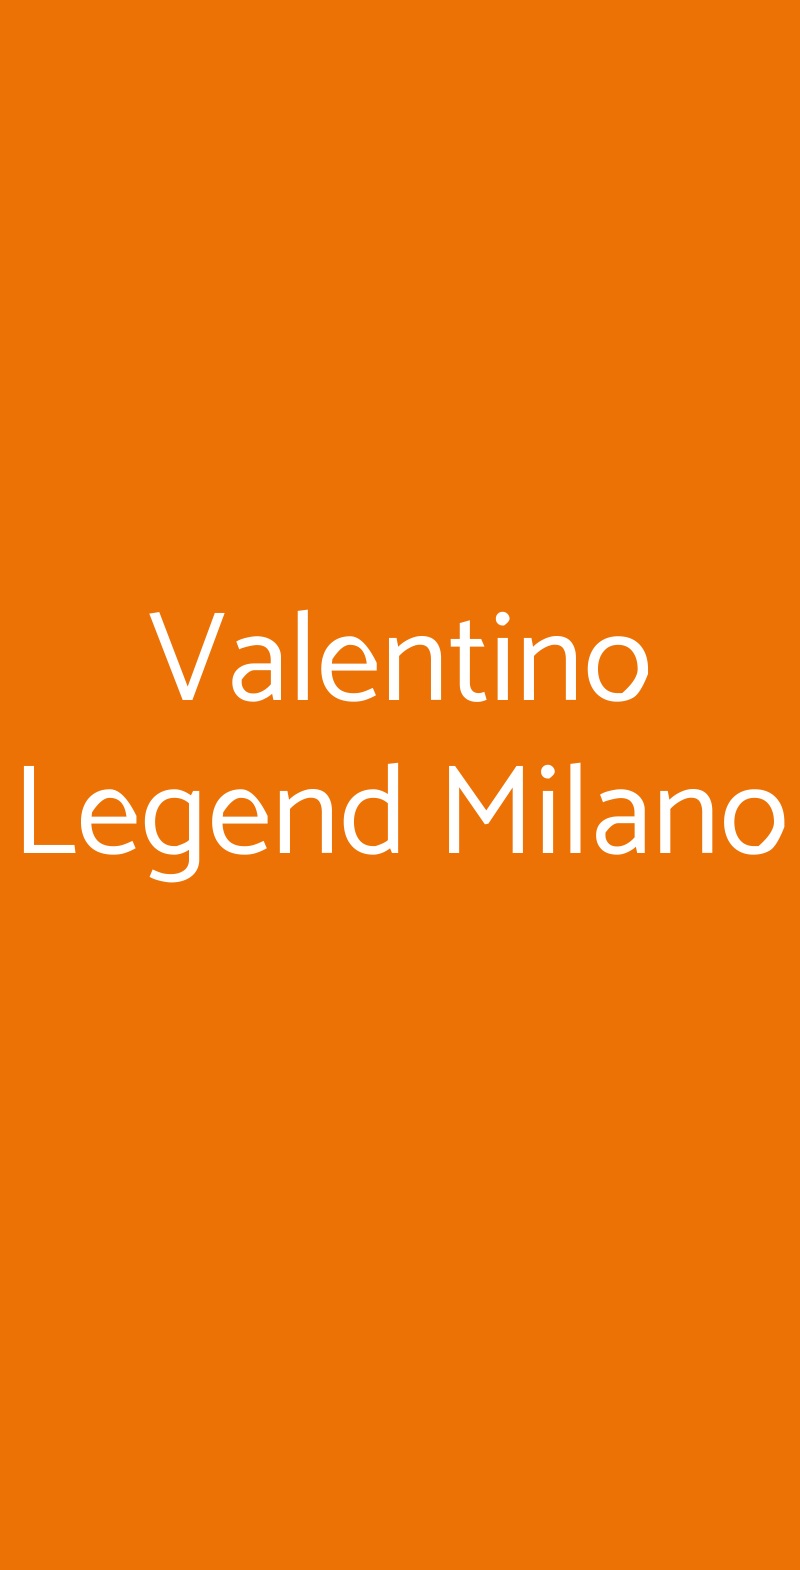 Valentino Legend Milano Milano menù 1 pagina